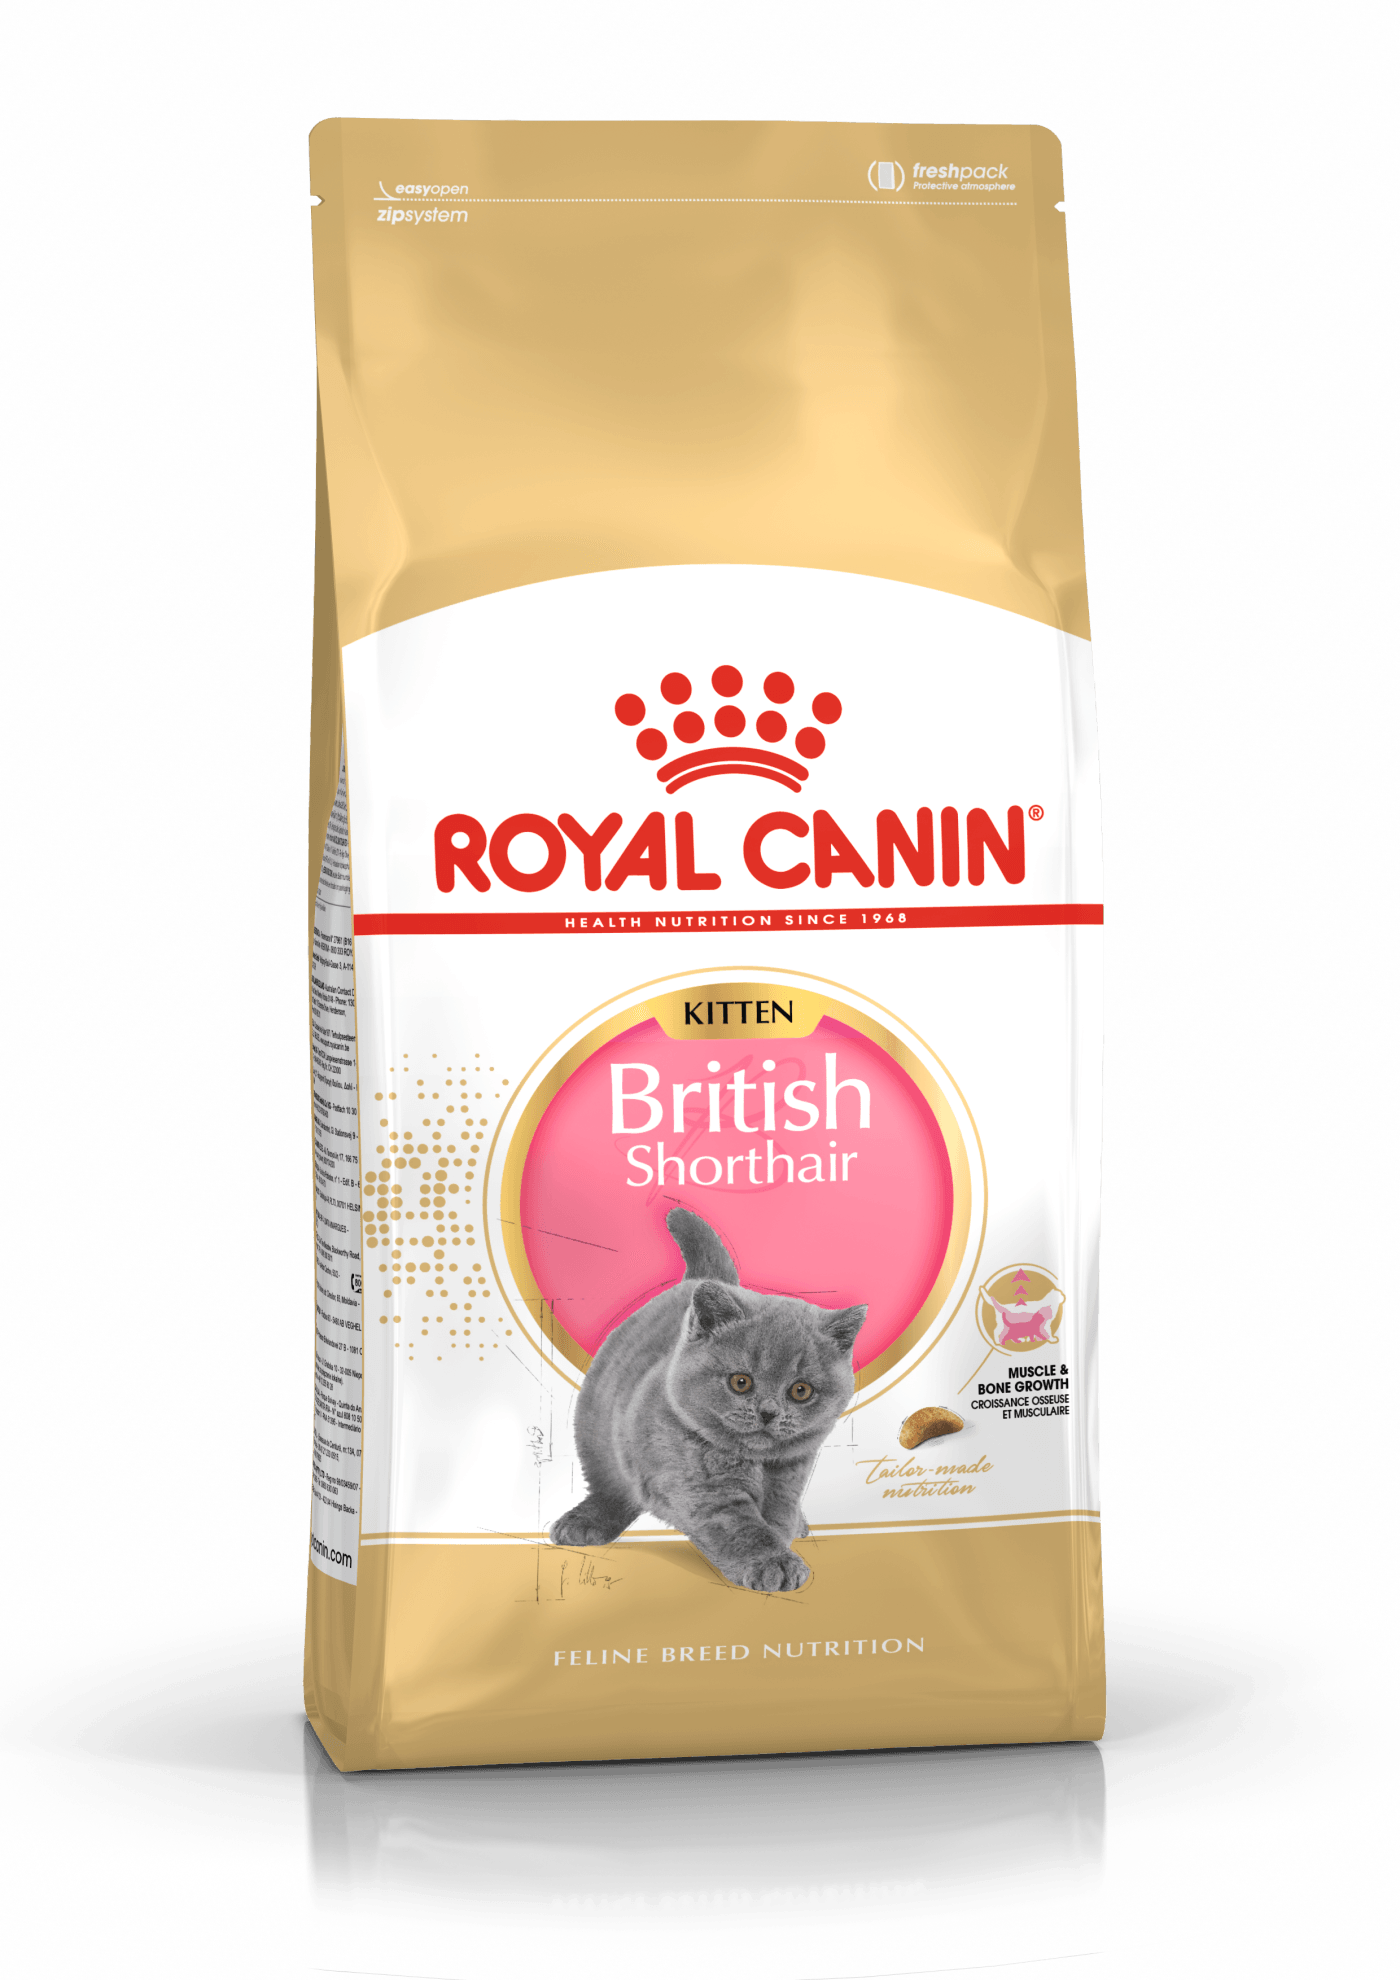 【Royal Canin】法國皇家貓乾糧 - 英國短毛貓專屬配方 (成 / 幼貓) - Pet Pet Plaza